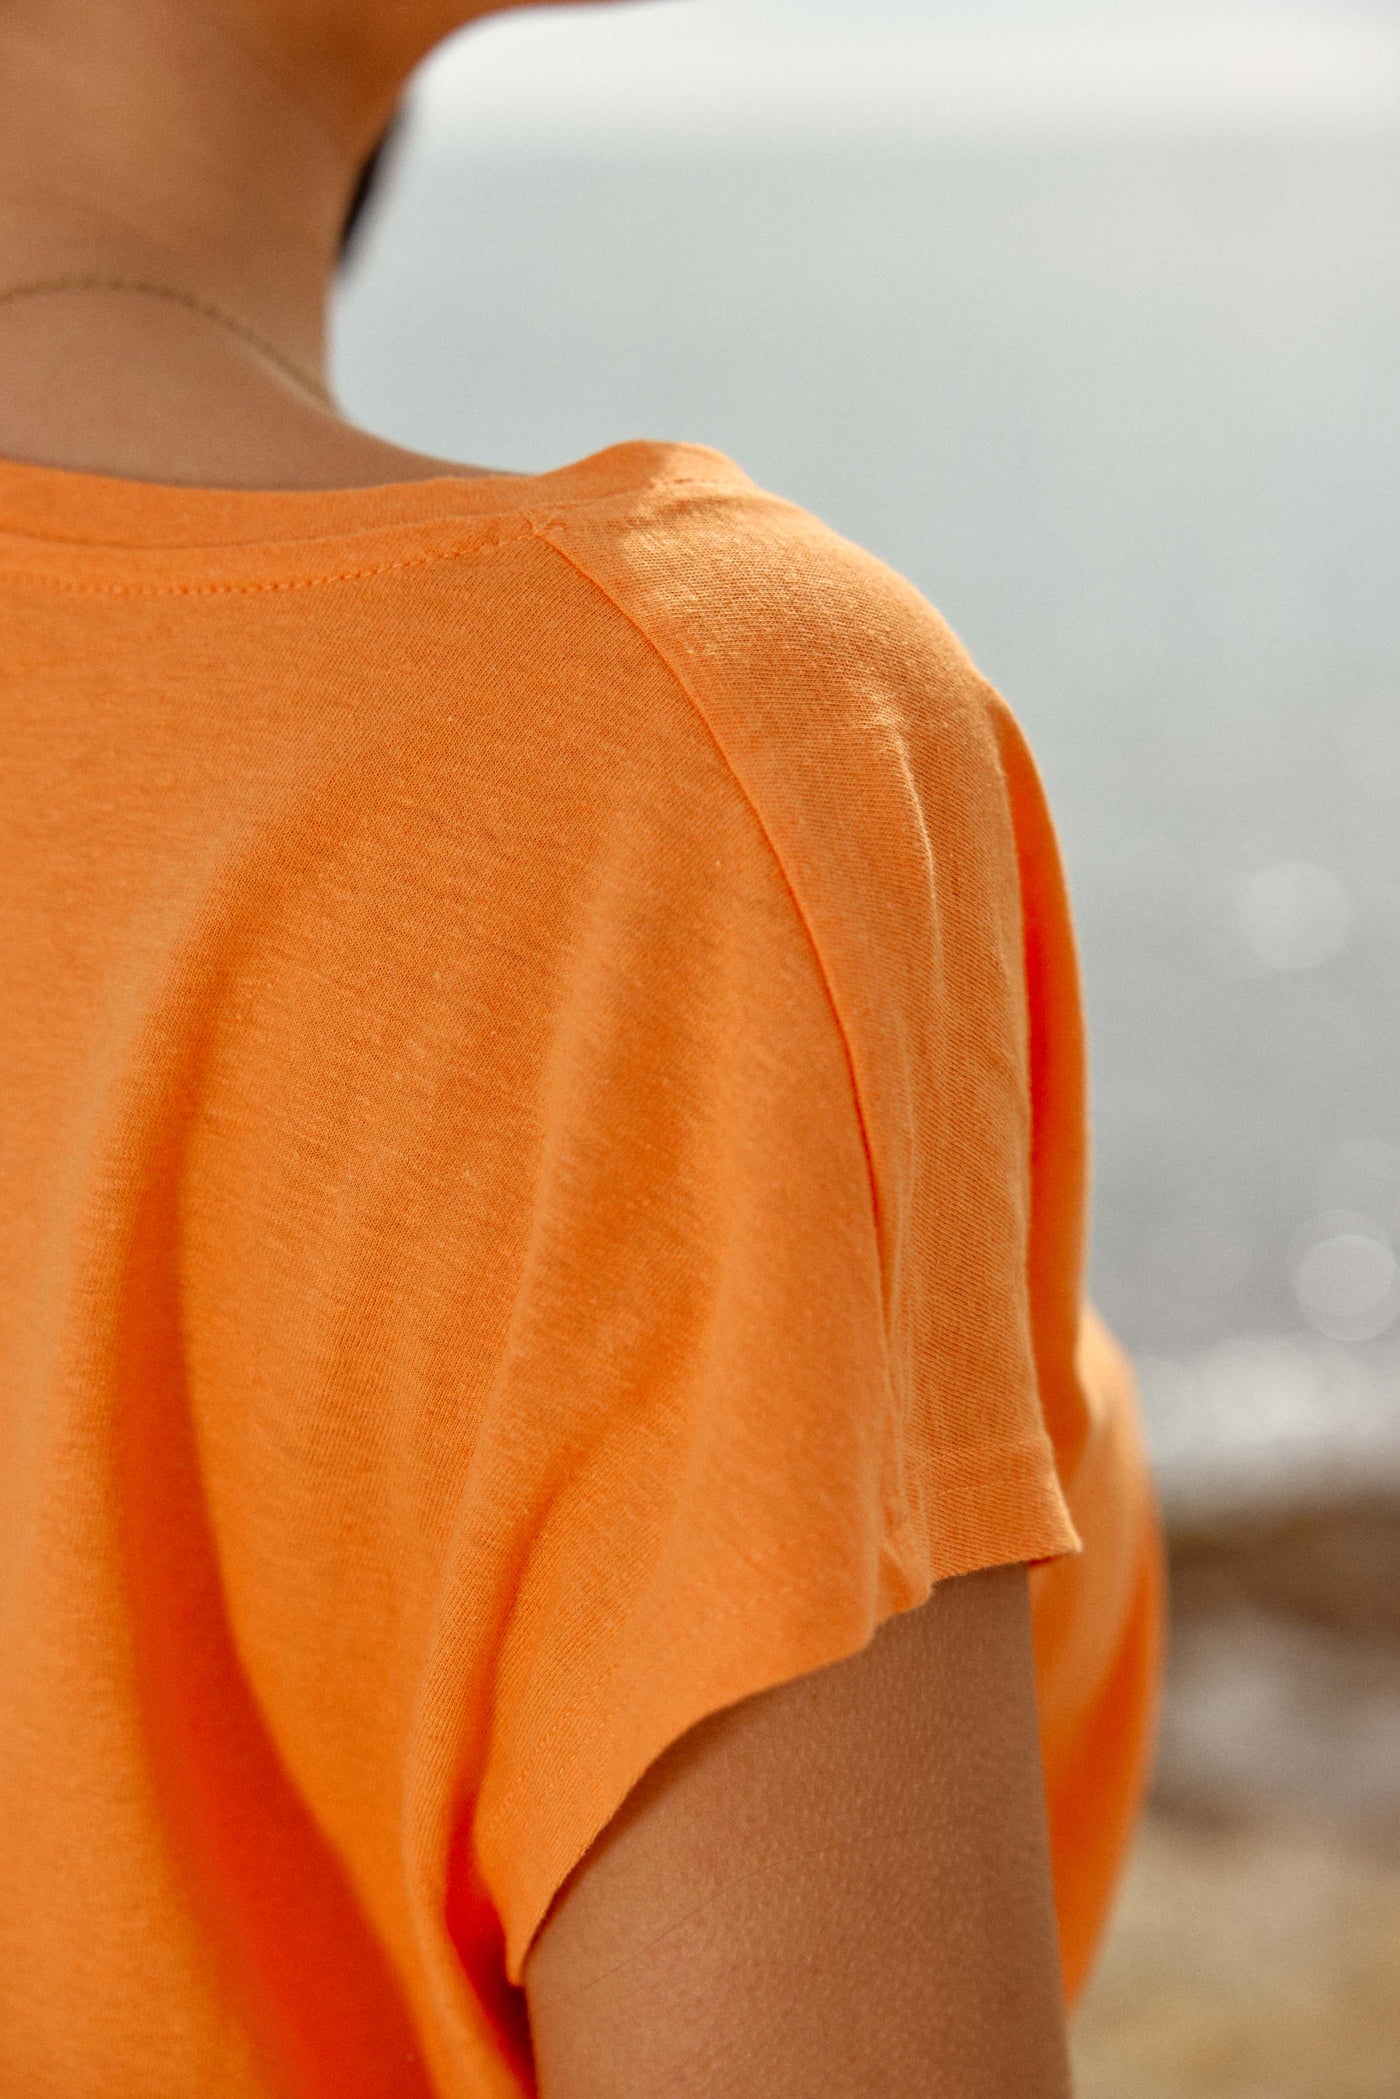 T-shirt Safia - Orange